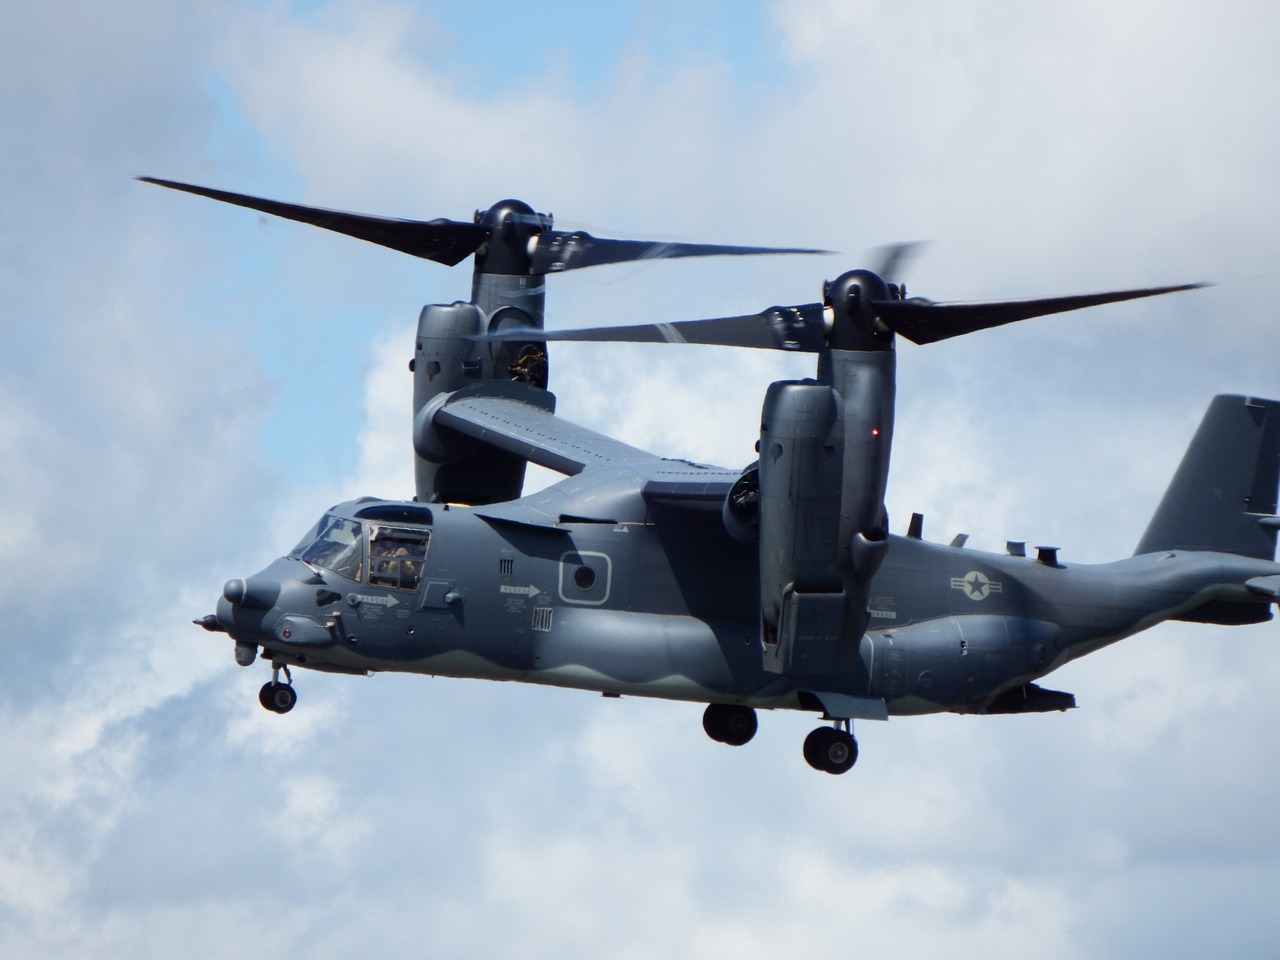 Αυστραλία: Συνετρίβη αεροσκάφος του αμερικανικού στρατού κατά τη διάρκεια άσκησης – Επέβαιναν 20 άτομα